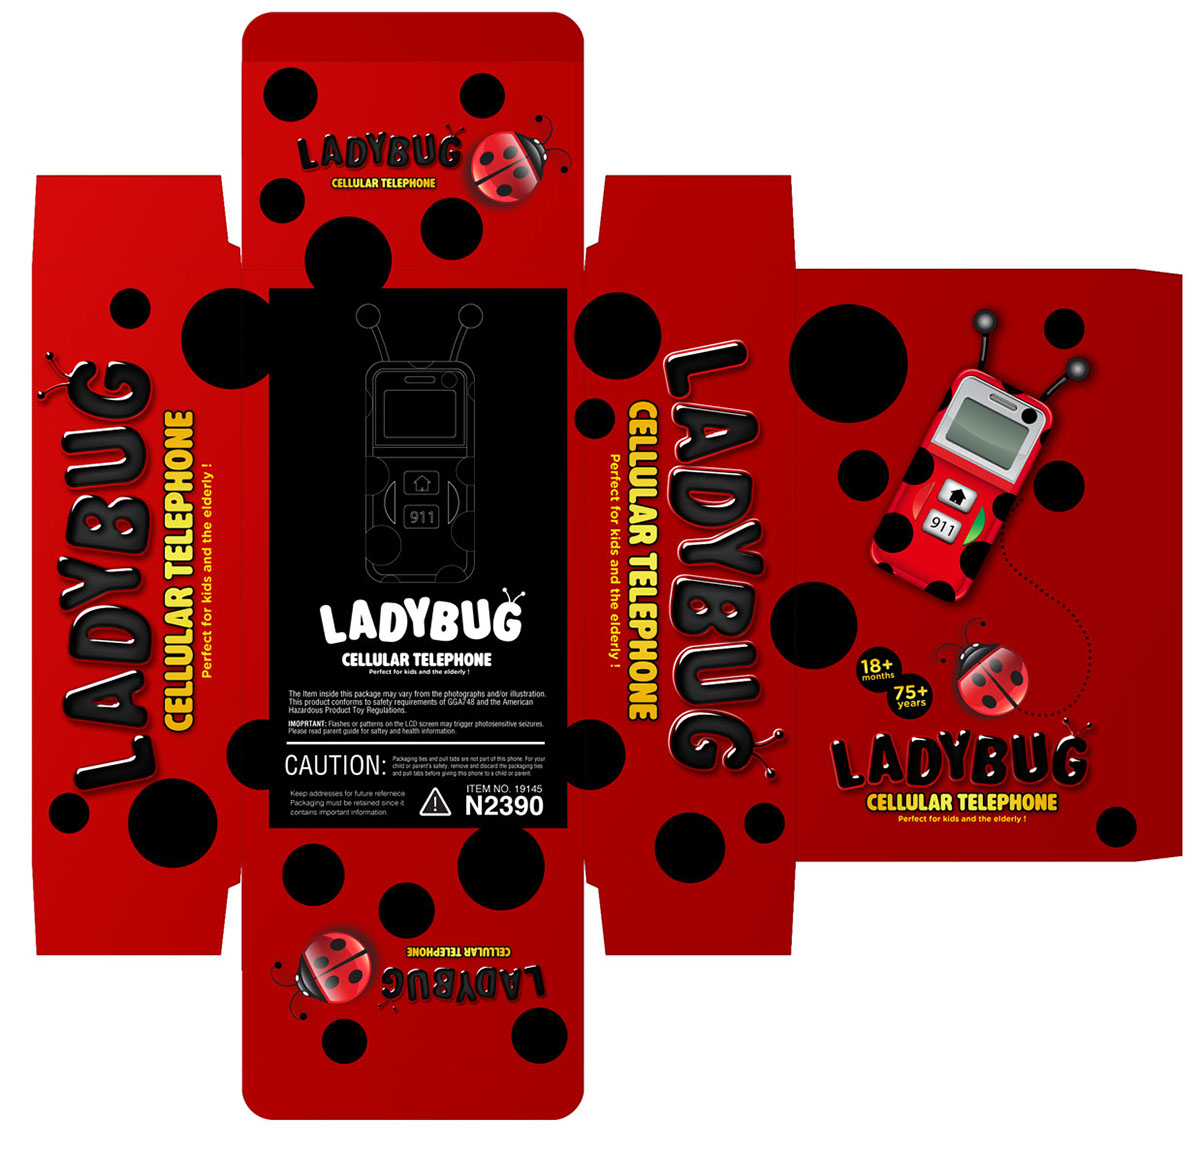 Ladybug Cell Phone :: Behance